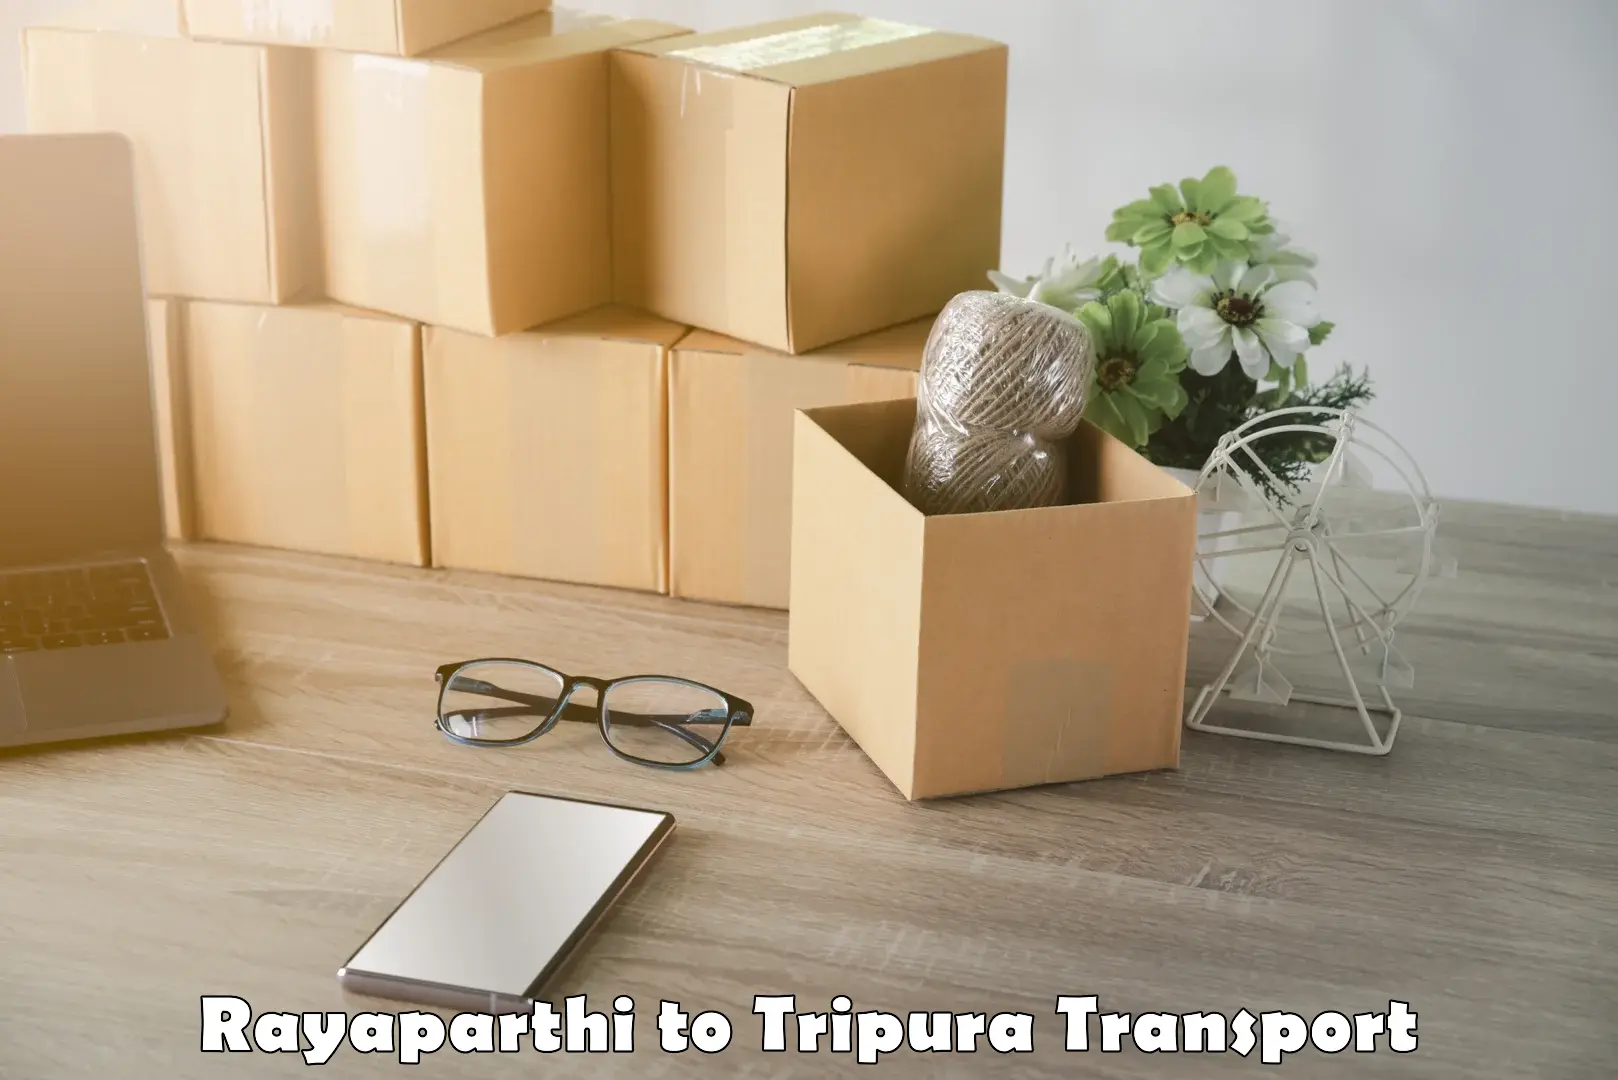 Luggage transport services Rayaparthi to Amarpur Gomati